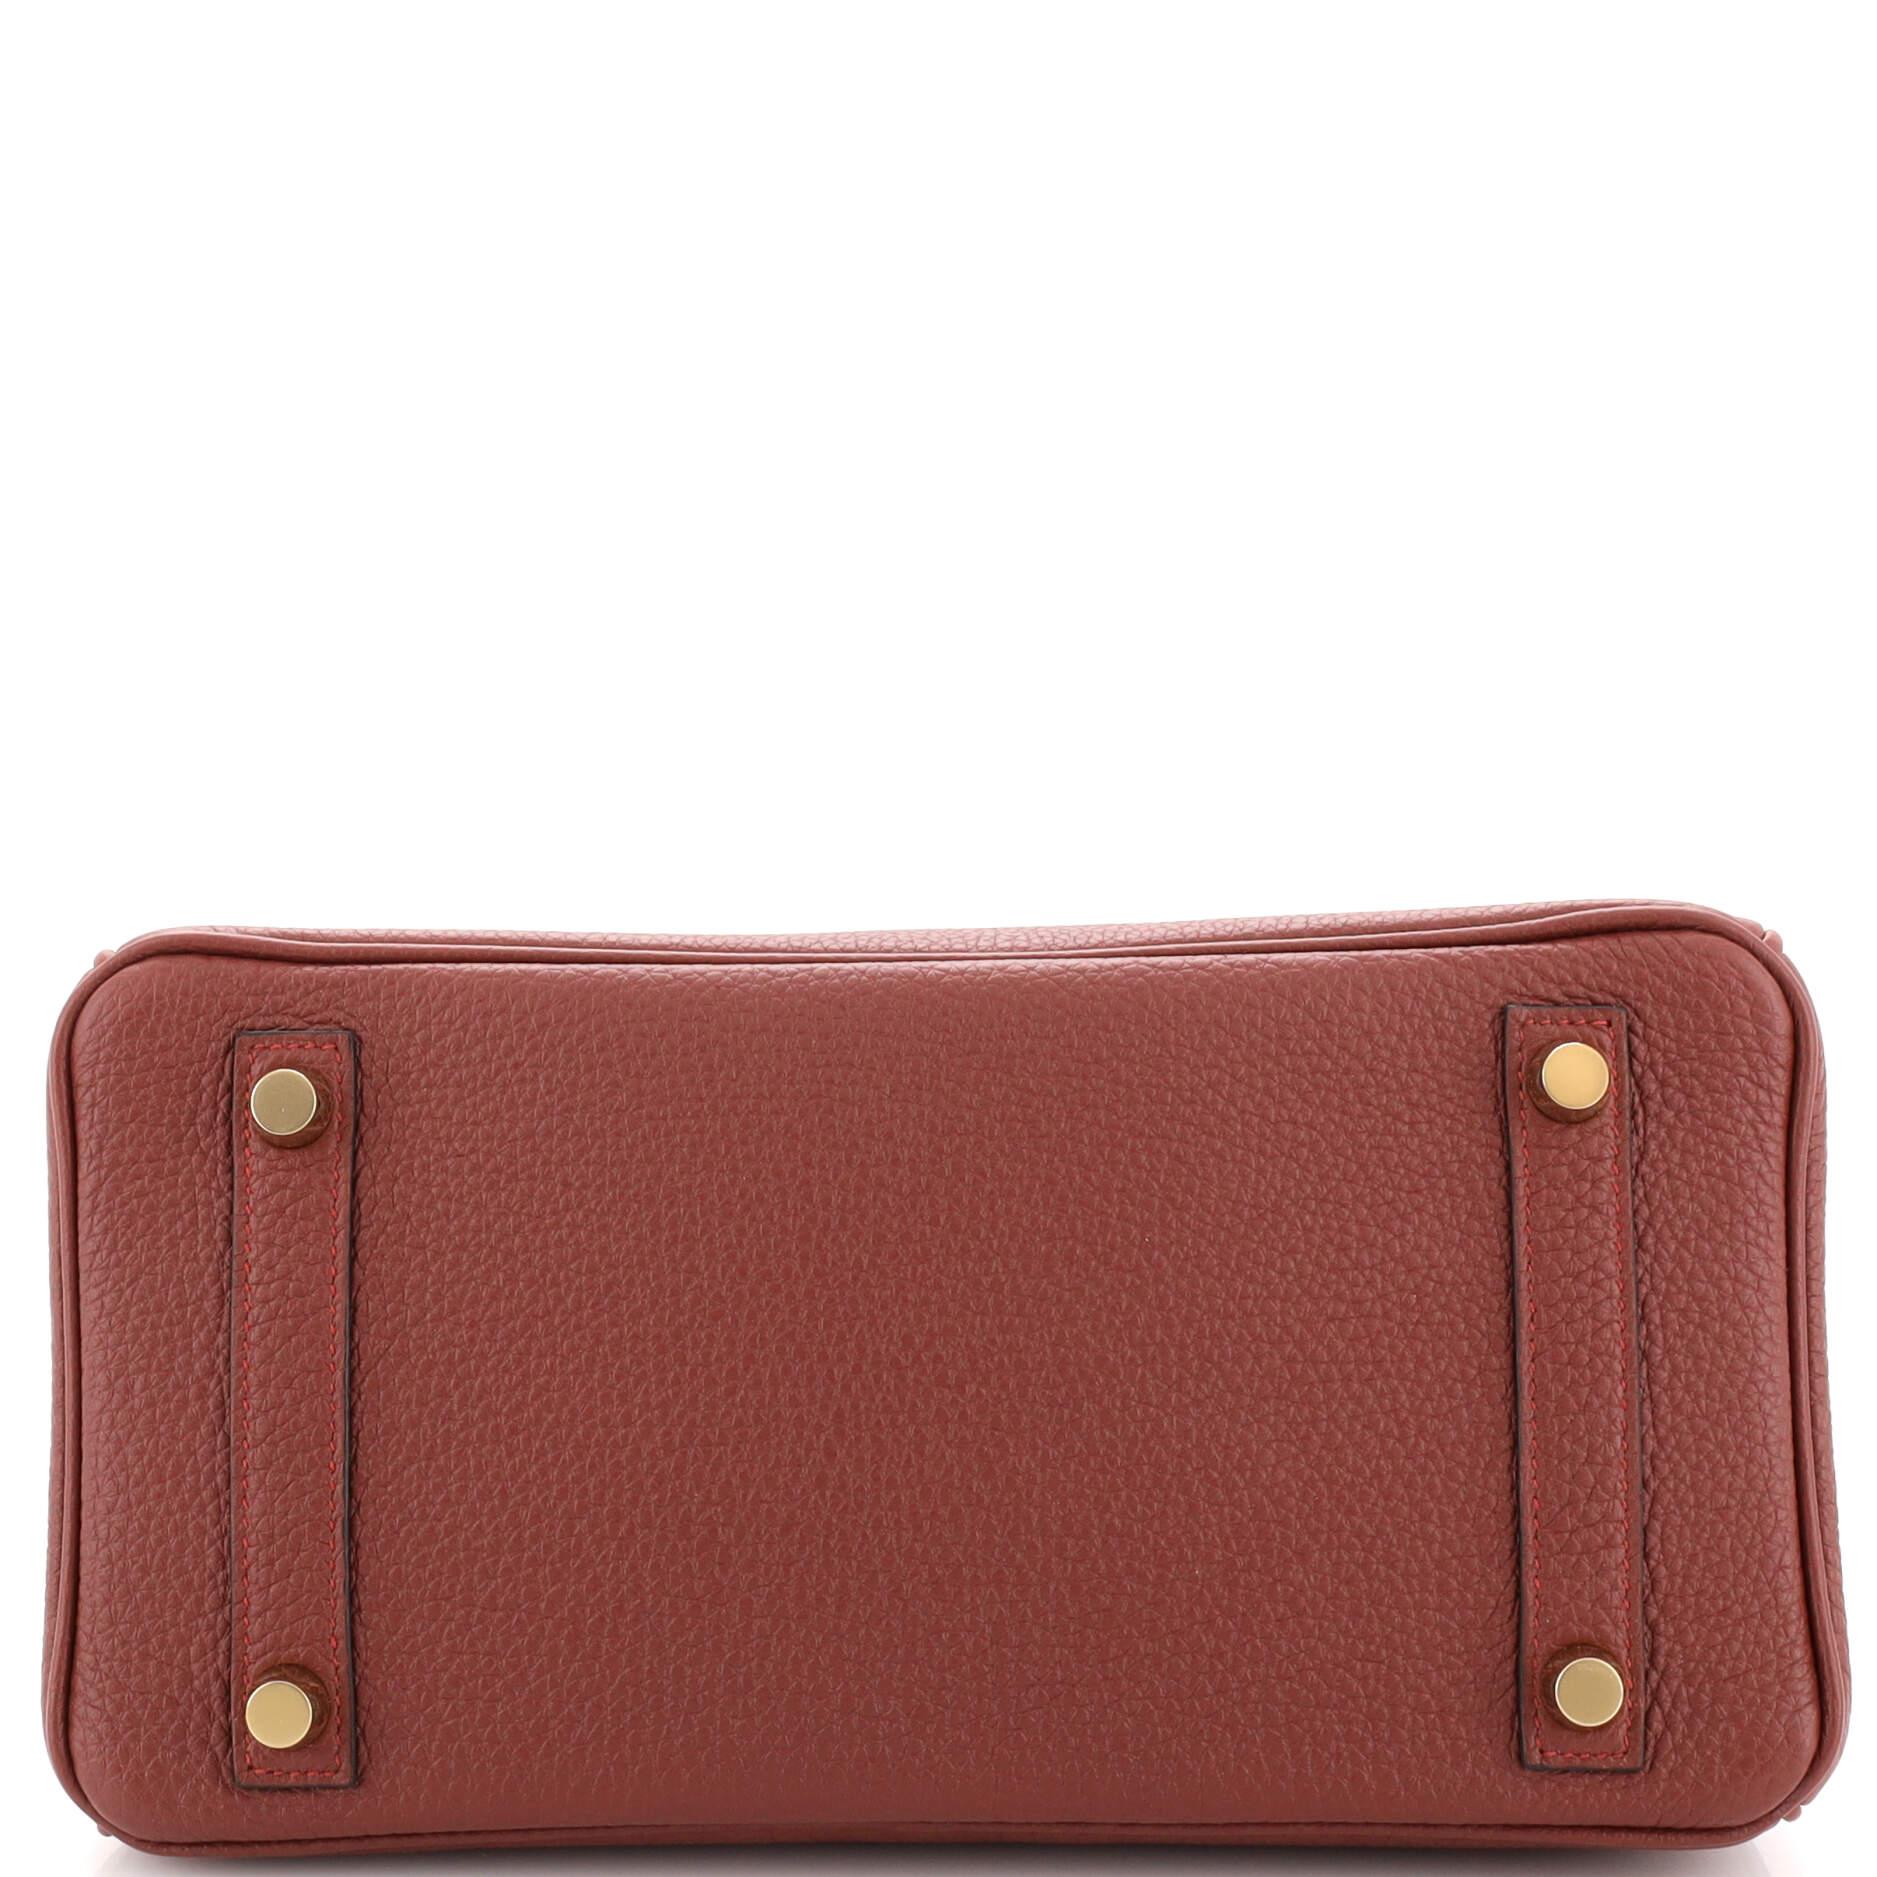 Hermes Birkin Handbag Rouge H Togo with Gold Hardware 25 1